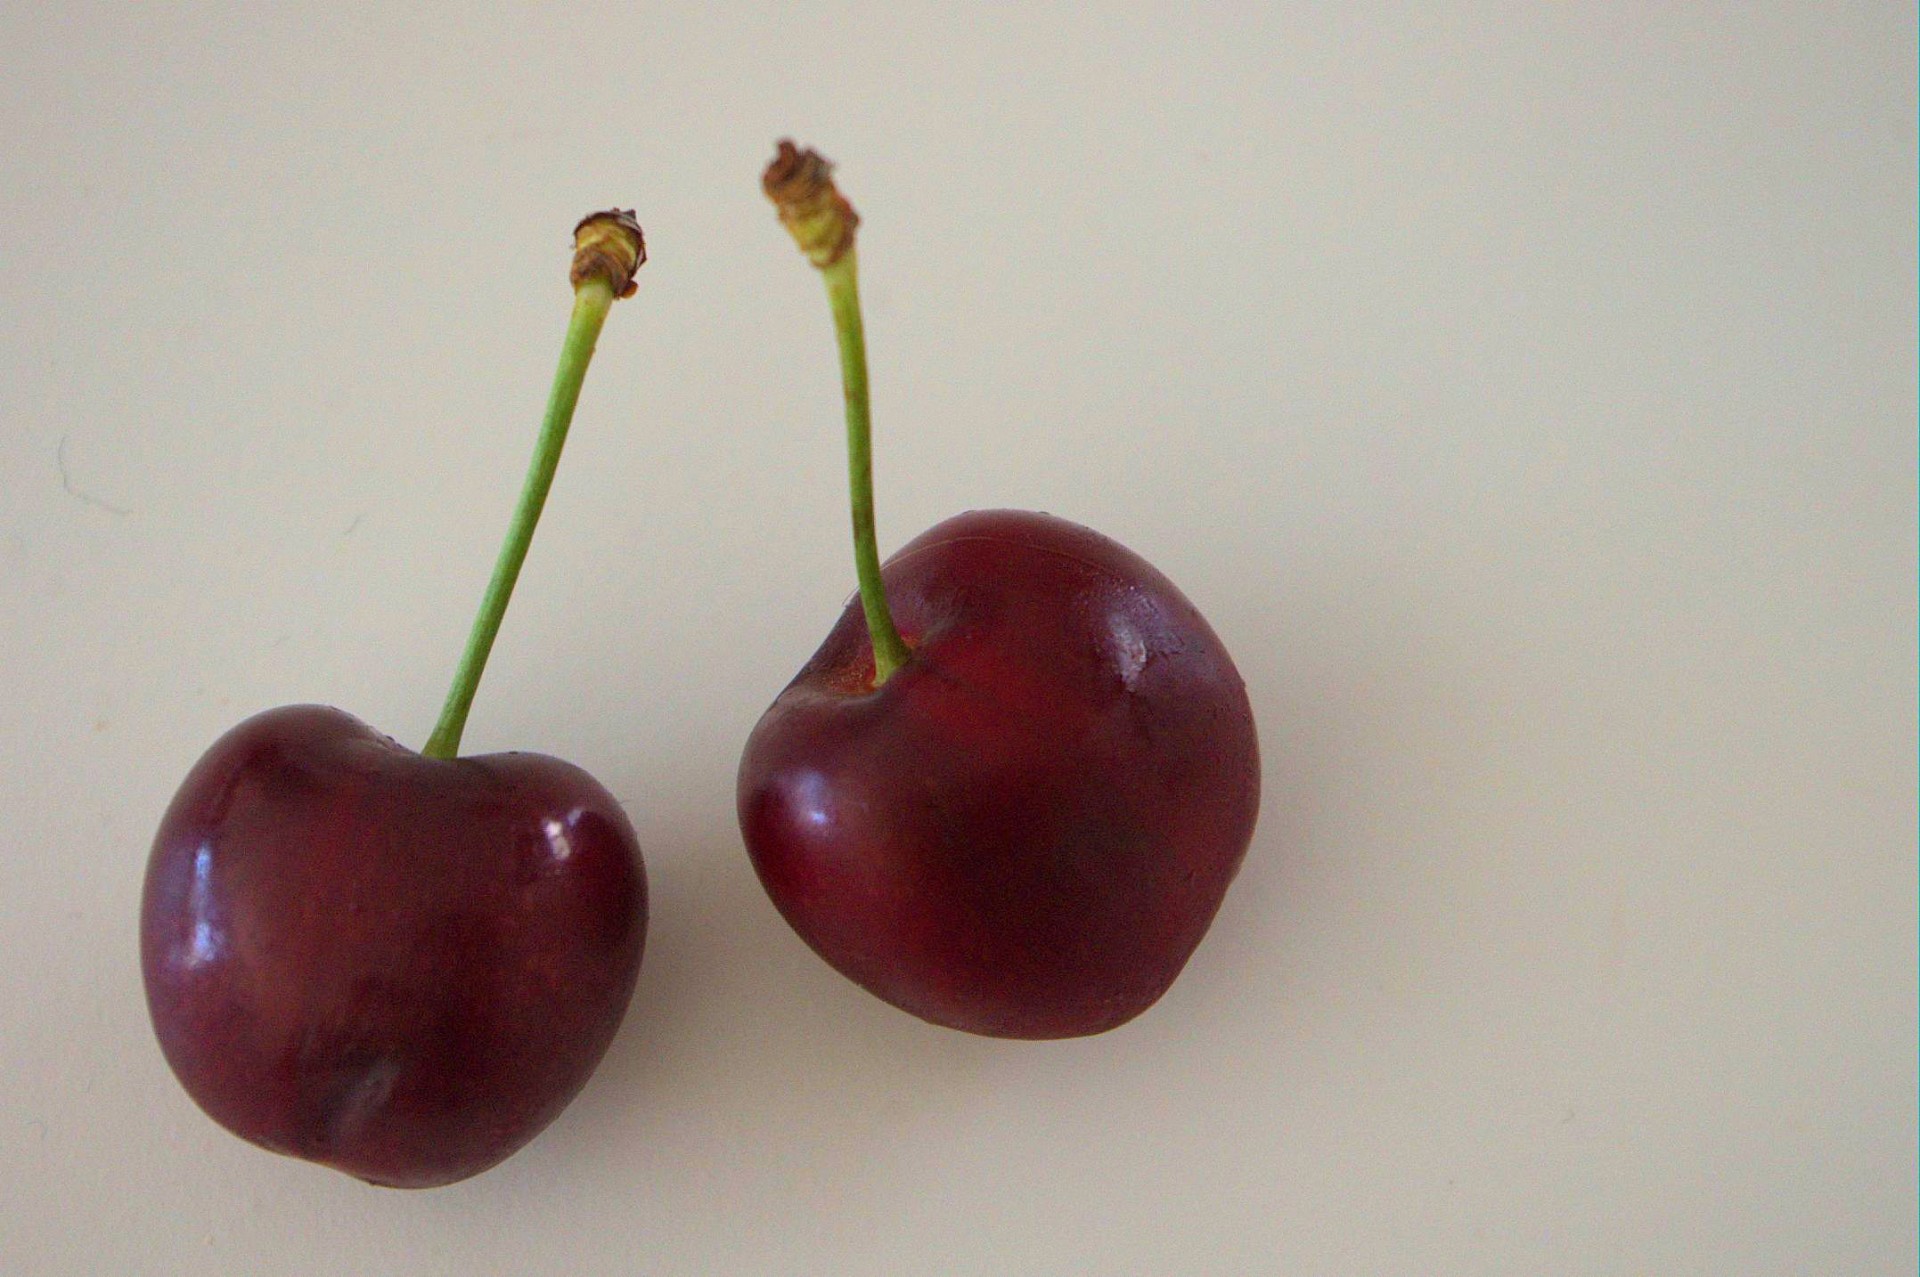 Pair second. Две вишни. Две красные вишни. Cherry Red 53. Xros 2 вишня.